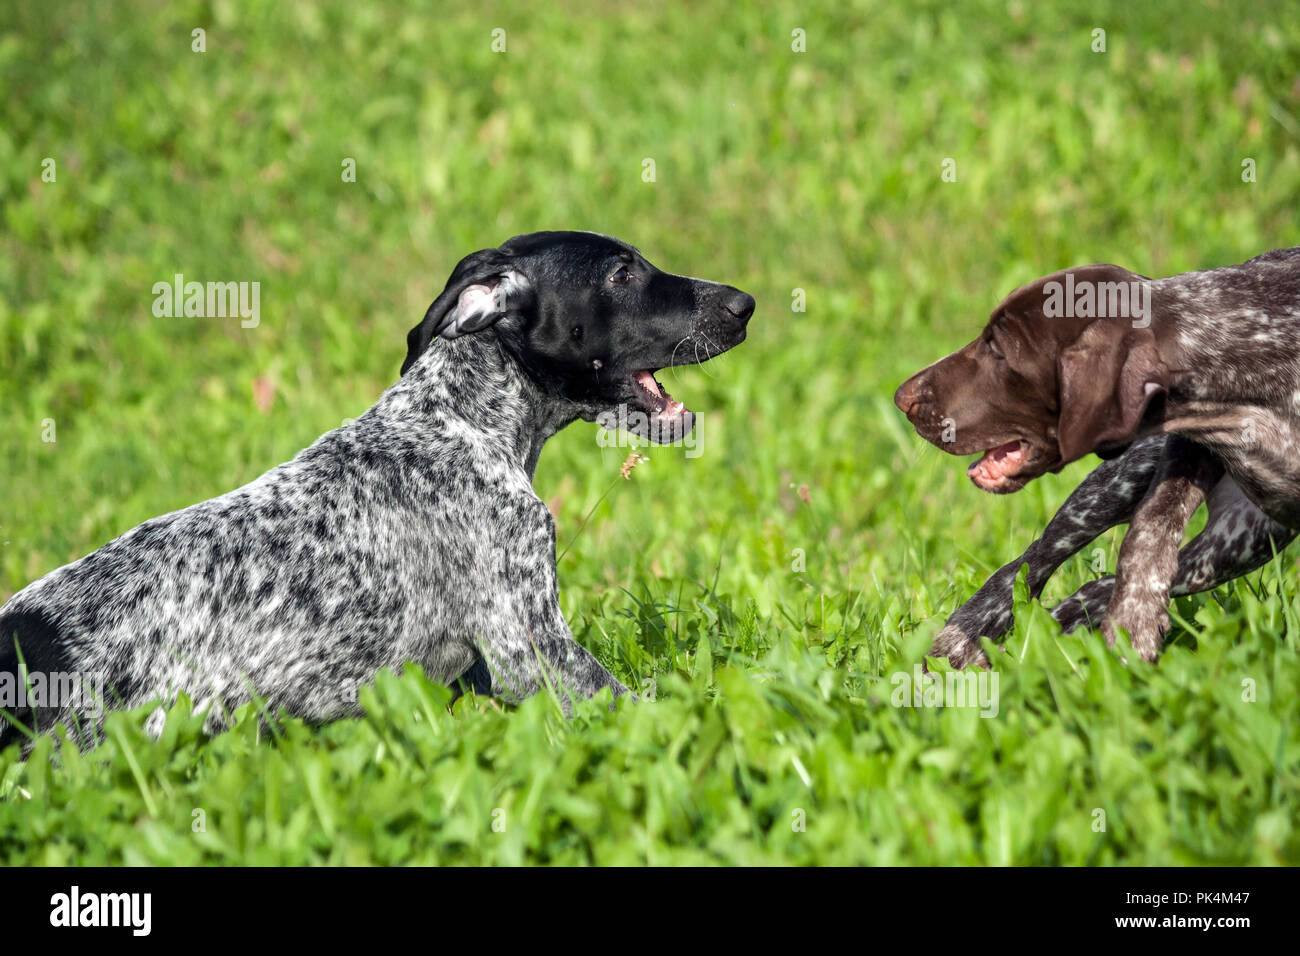 Il tedesco shorthaired puntatore, kurtshaar due spotted piccolo cucciolo, nero e marrone in un punto bianco, giocando sull'erba insieme, funny museruola, soleggiato Foto Stock